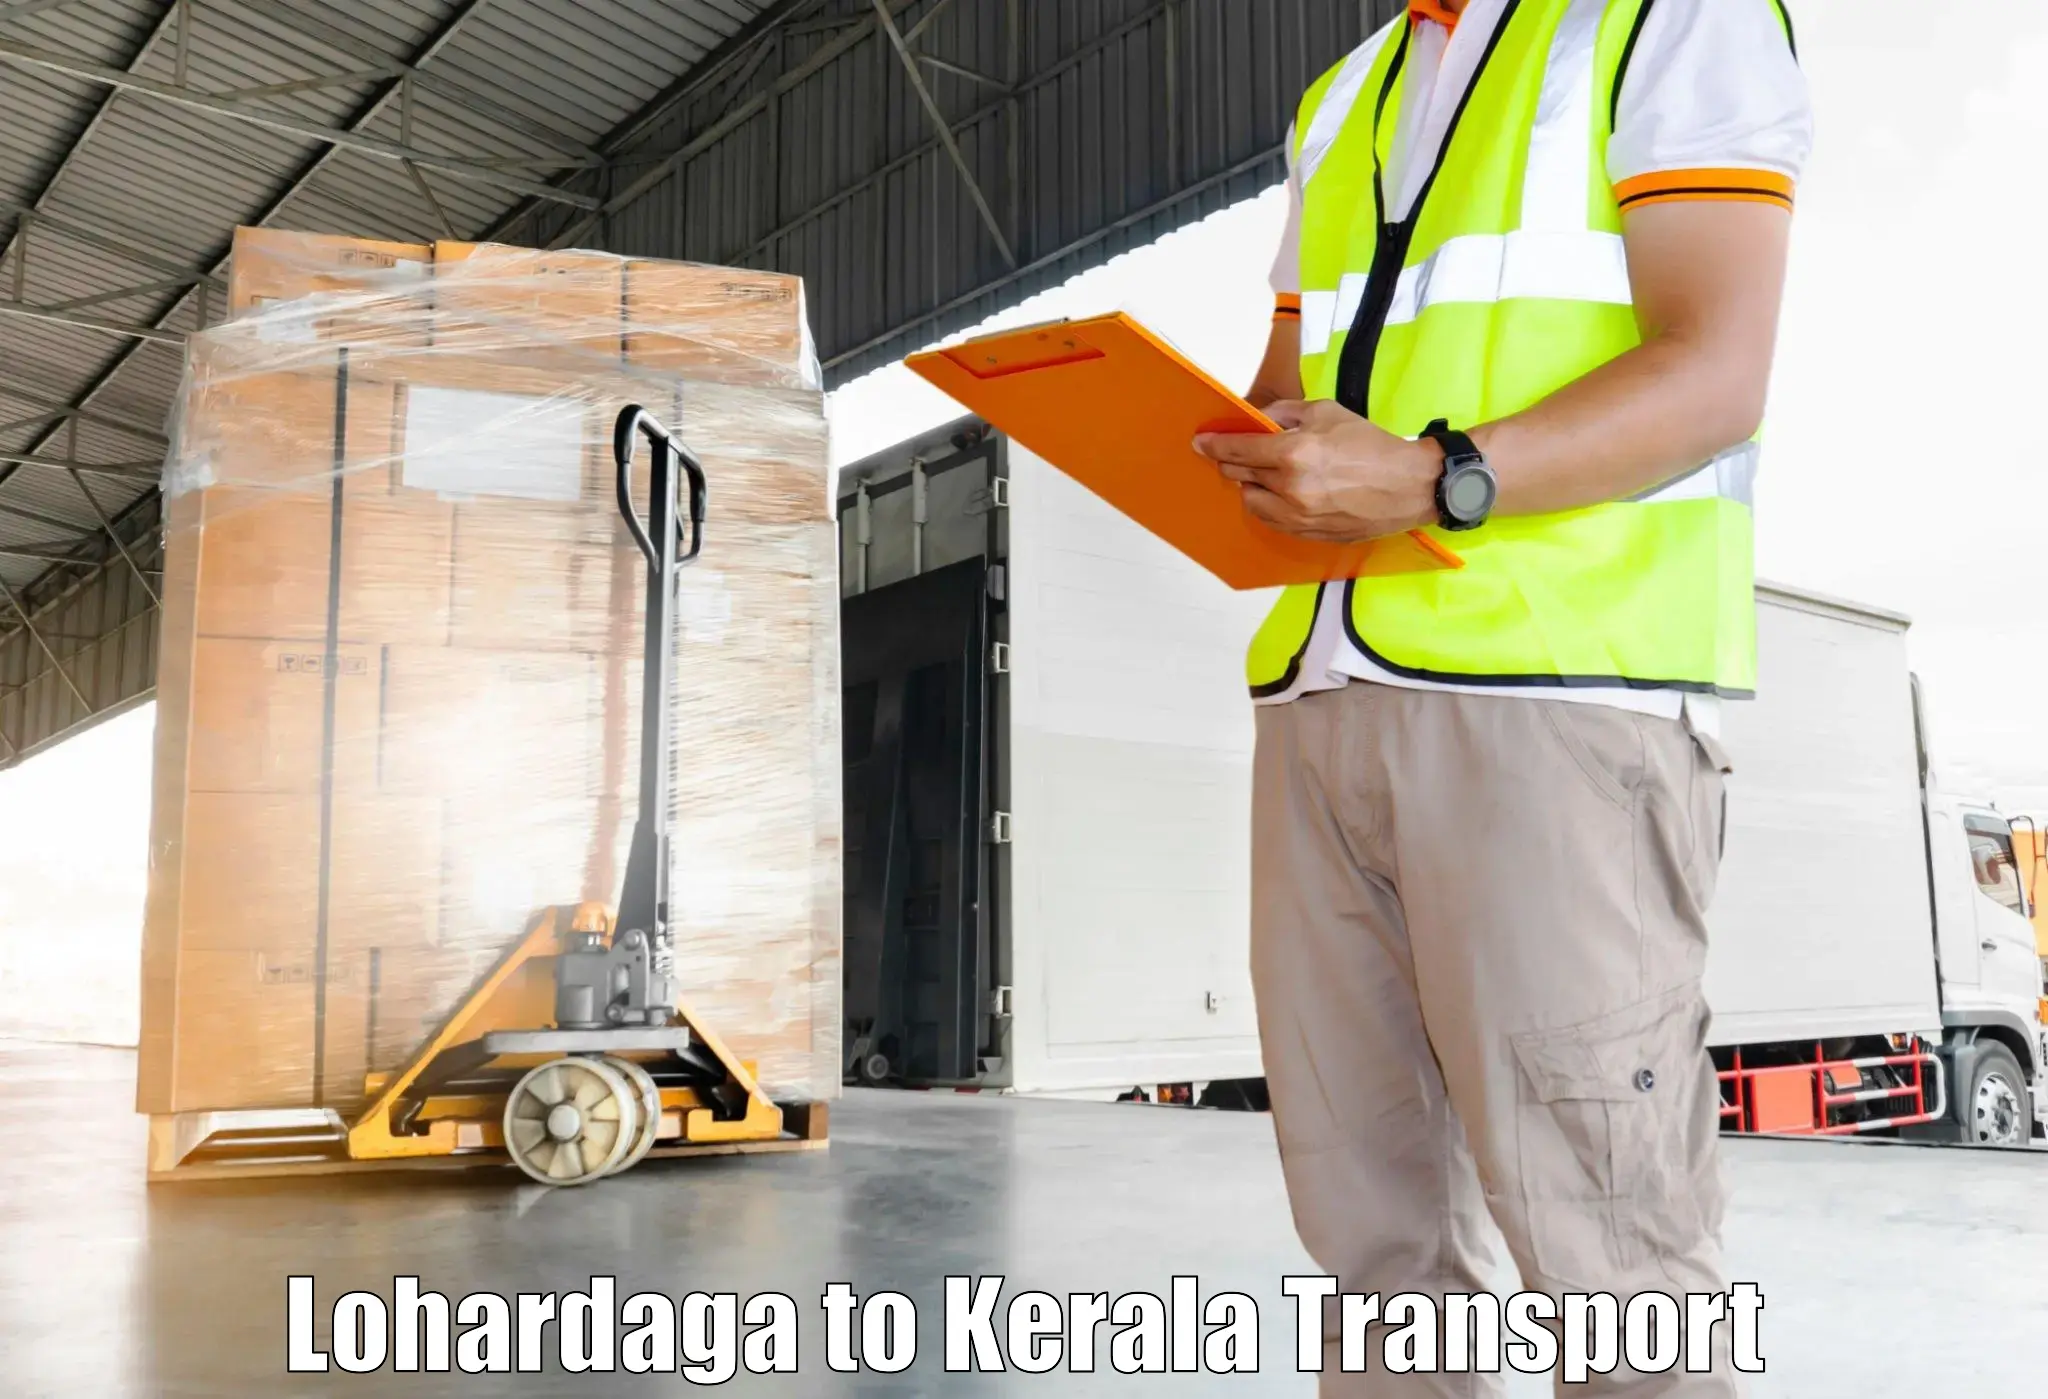 Transport in sharing Lohardaga to Palai